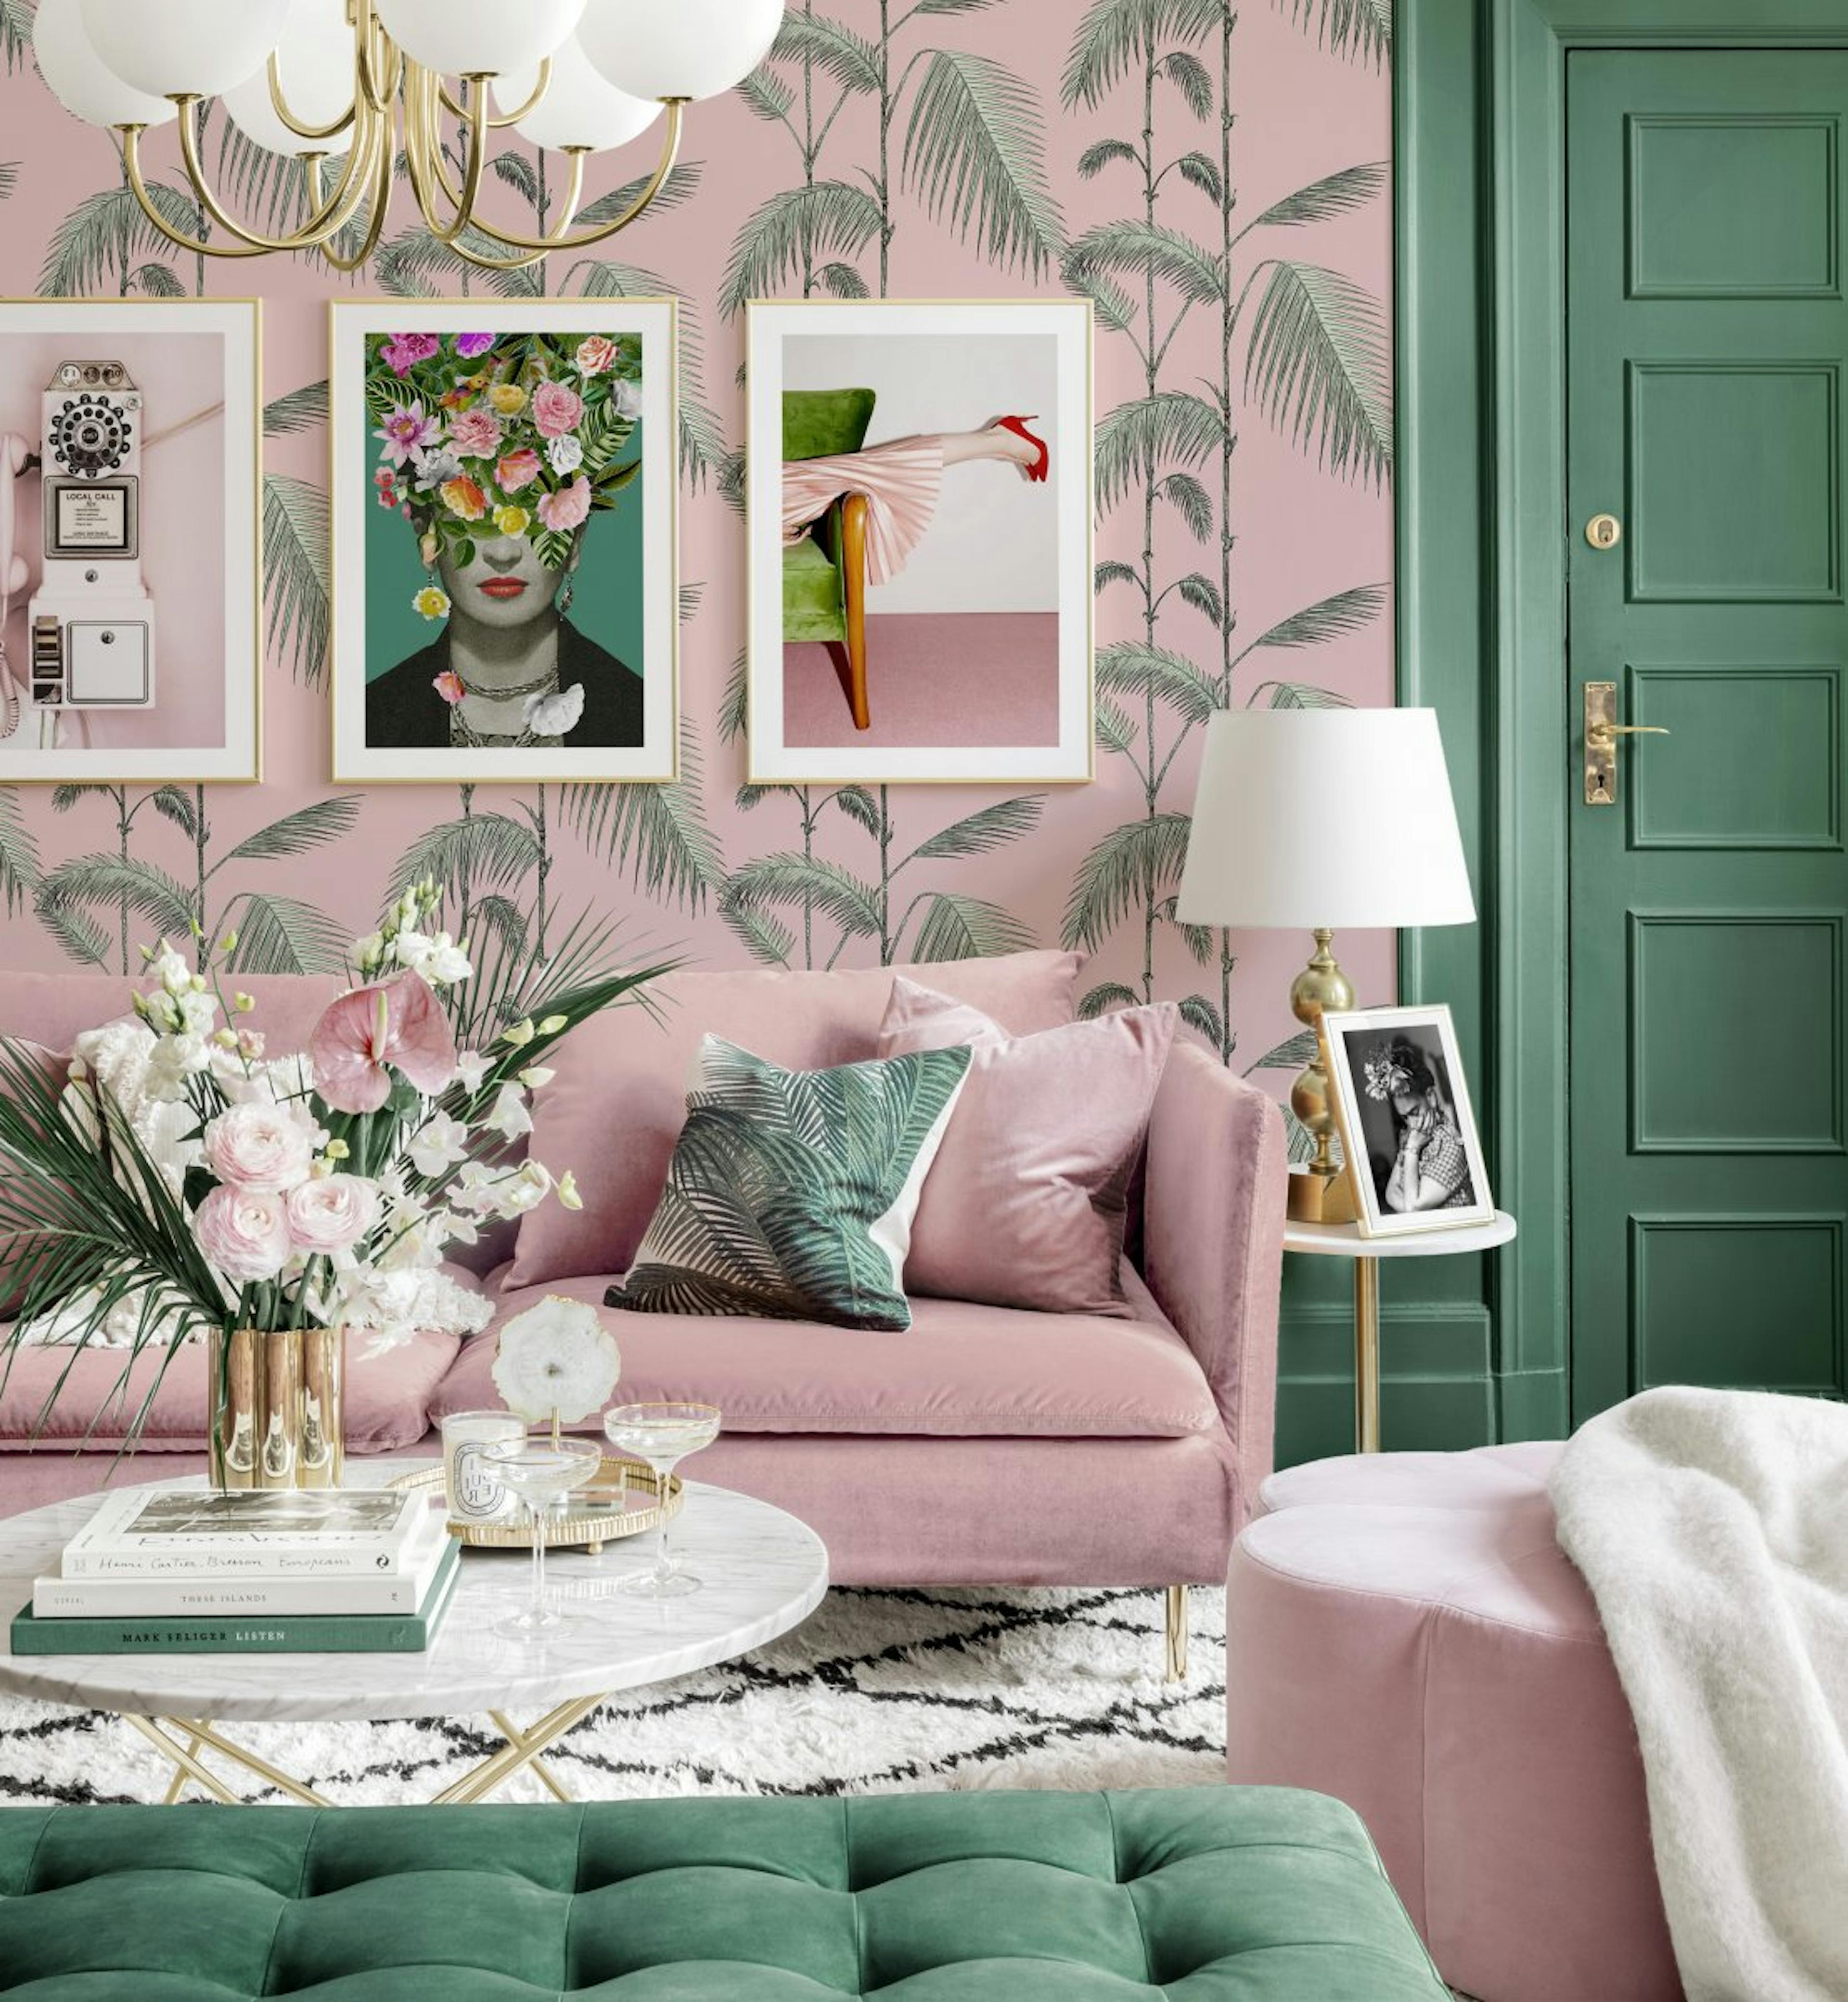 Pozytywna galeria obrazow chinoiserie plakaty frida kahlo rozowo-zielony salon